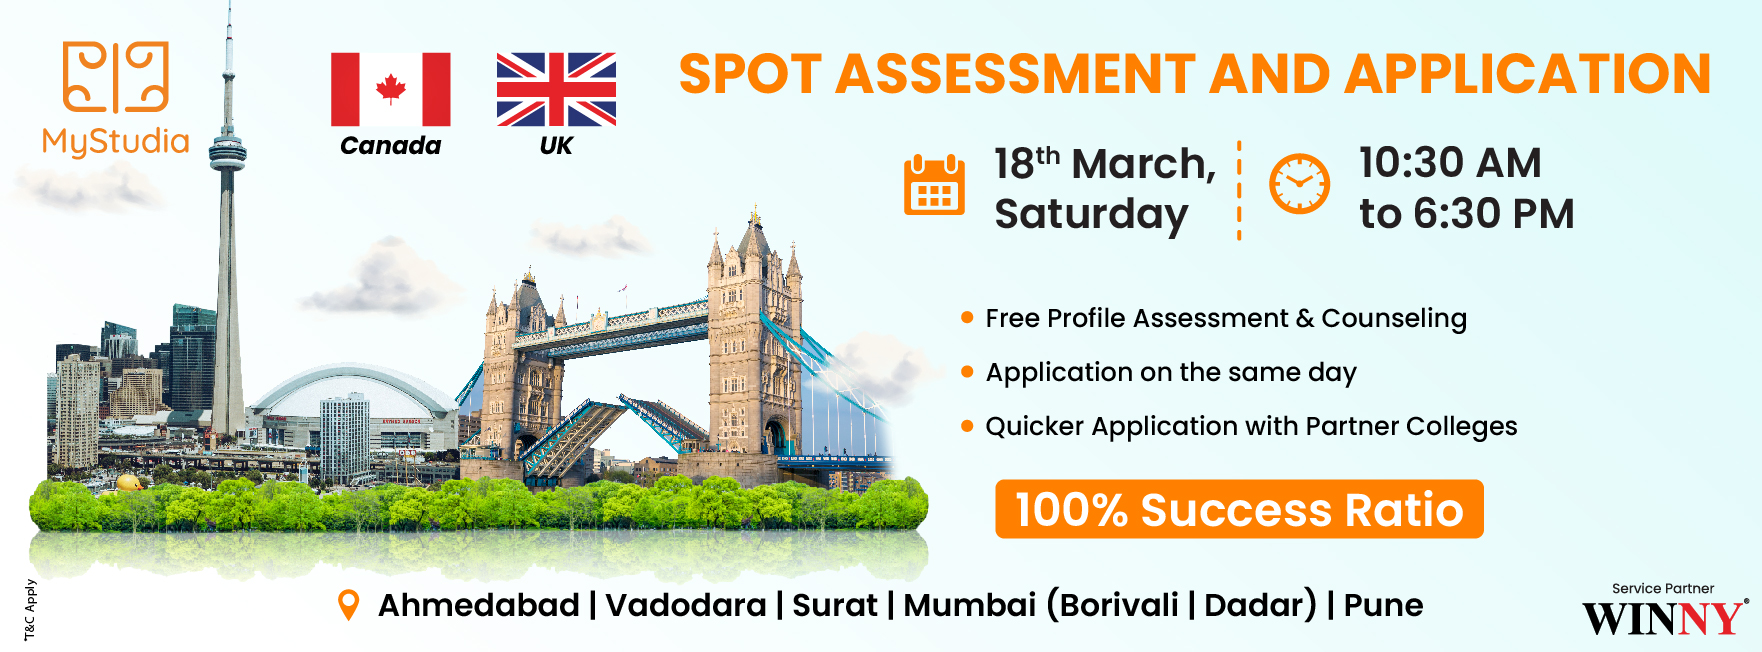 Study Abroad Seminar for Canada and UK at Vadodara, Vadodara, Gujarat, India